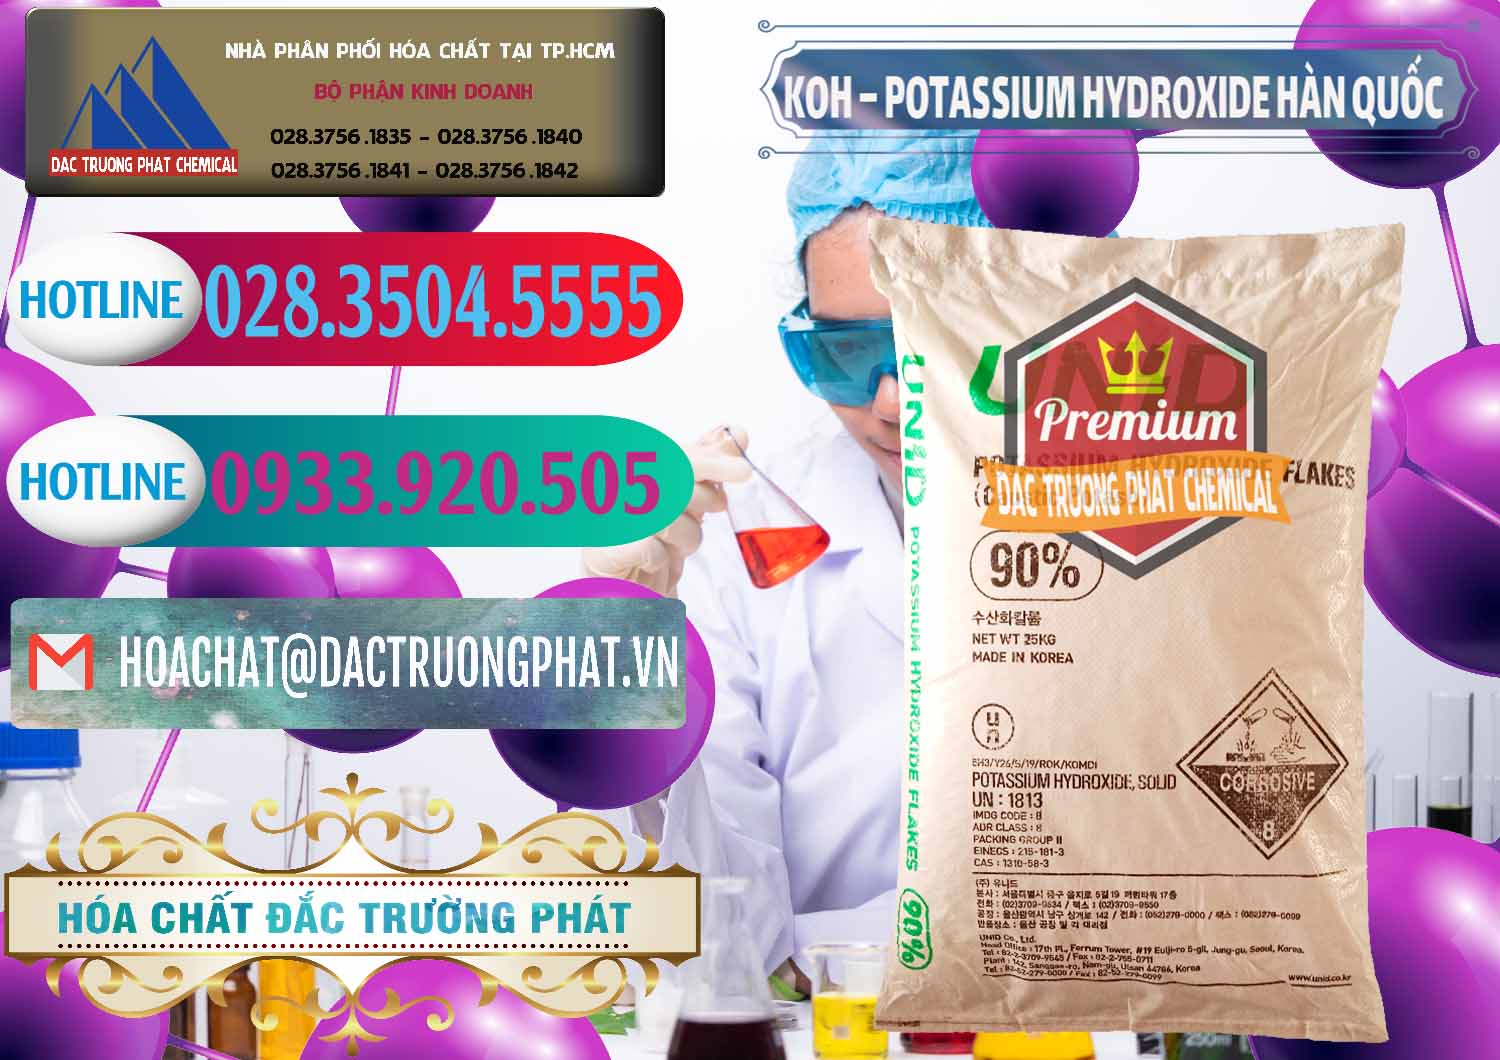 Chuyên cung cấp _ bán KOH ( 90%) – Potassium Hydroxide Unid Hàn Quốc Korea - 0090 - Cty cung cấp _ nhập khẩu hóa chất tại TP.HCM - truongphat.vn